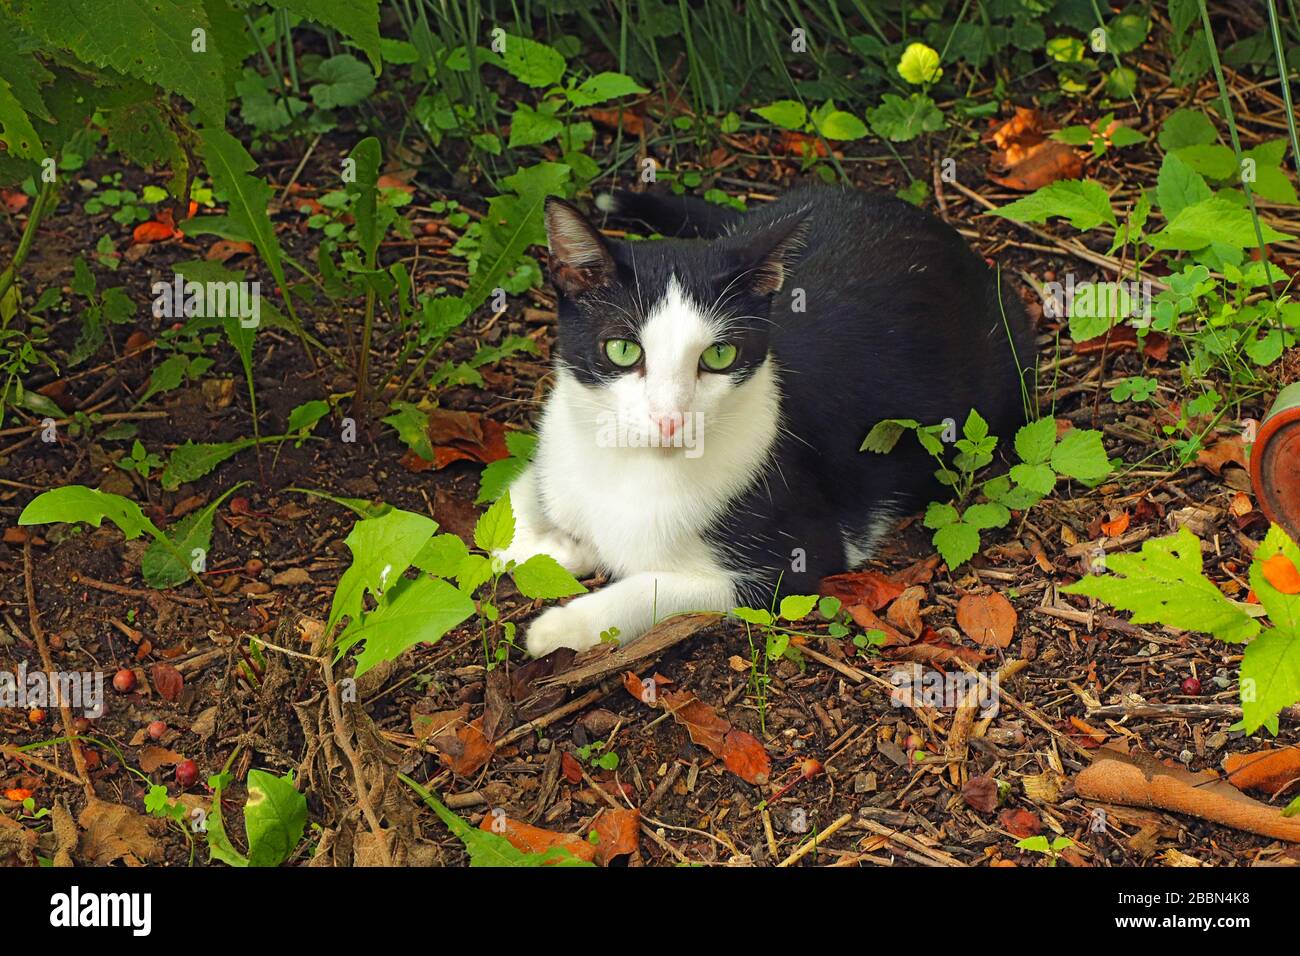 Un gato de esmoquin doméstico de ojos verdes, negro y blanco de shortair (Felis catus) fuera rodeado de vegetación Foto de stock